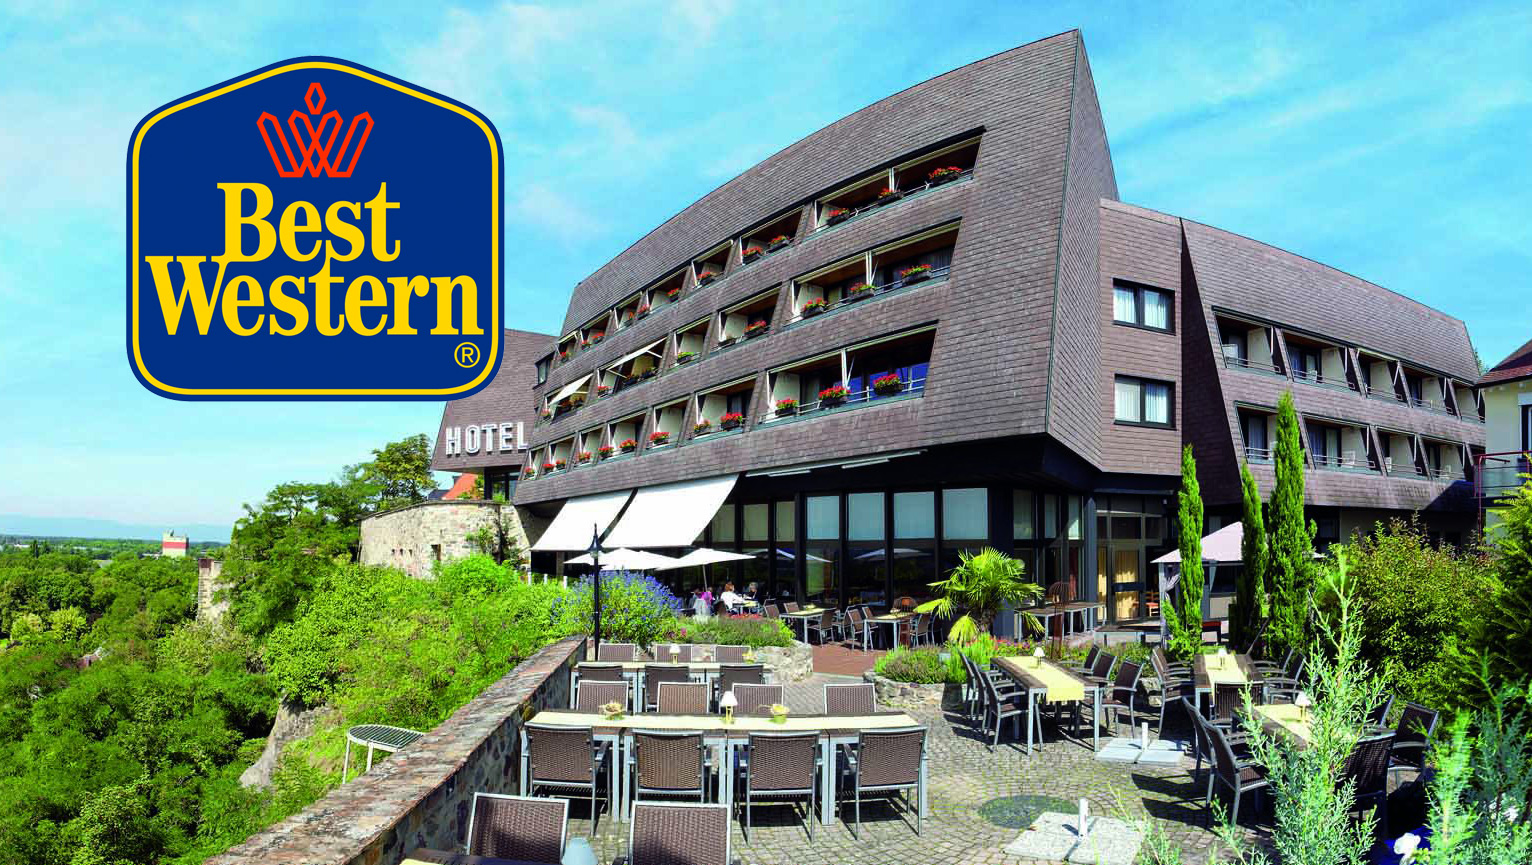  Best  Western  stellt seine Hotels  nahe deutschen 